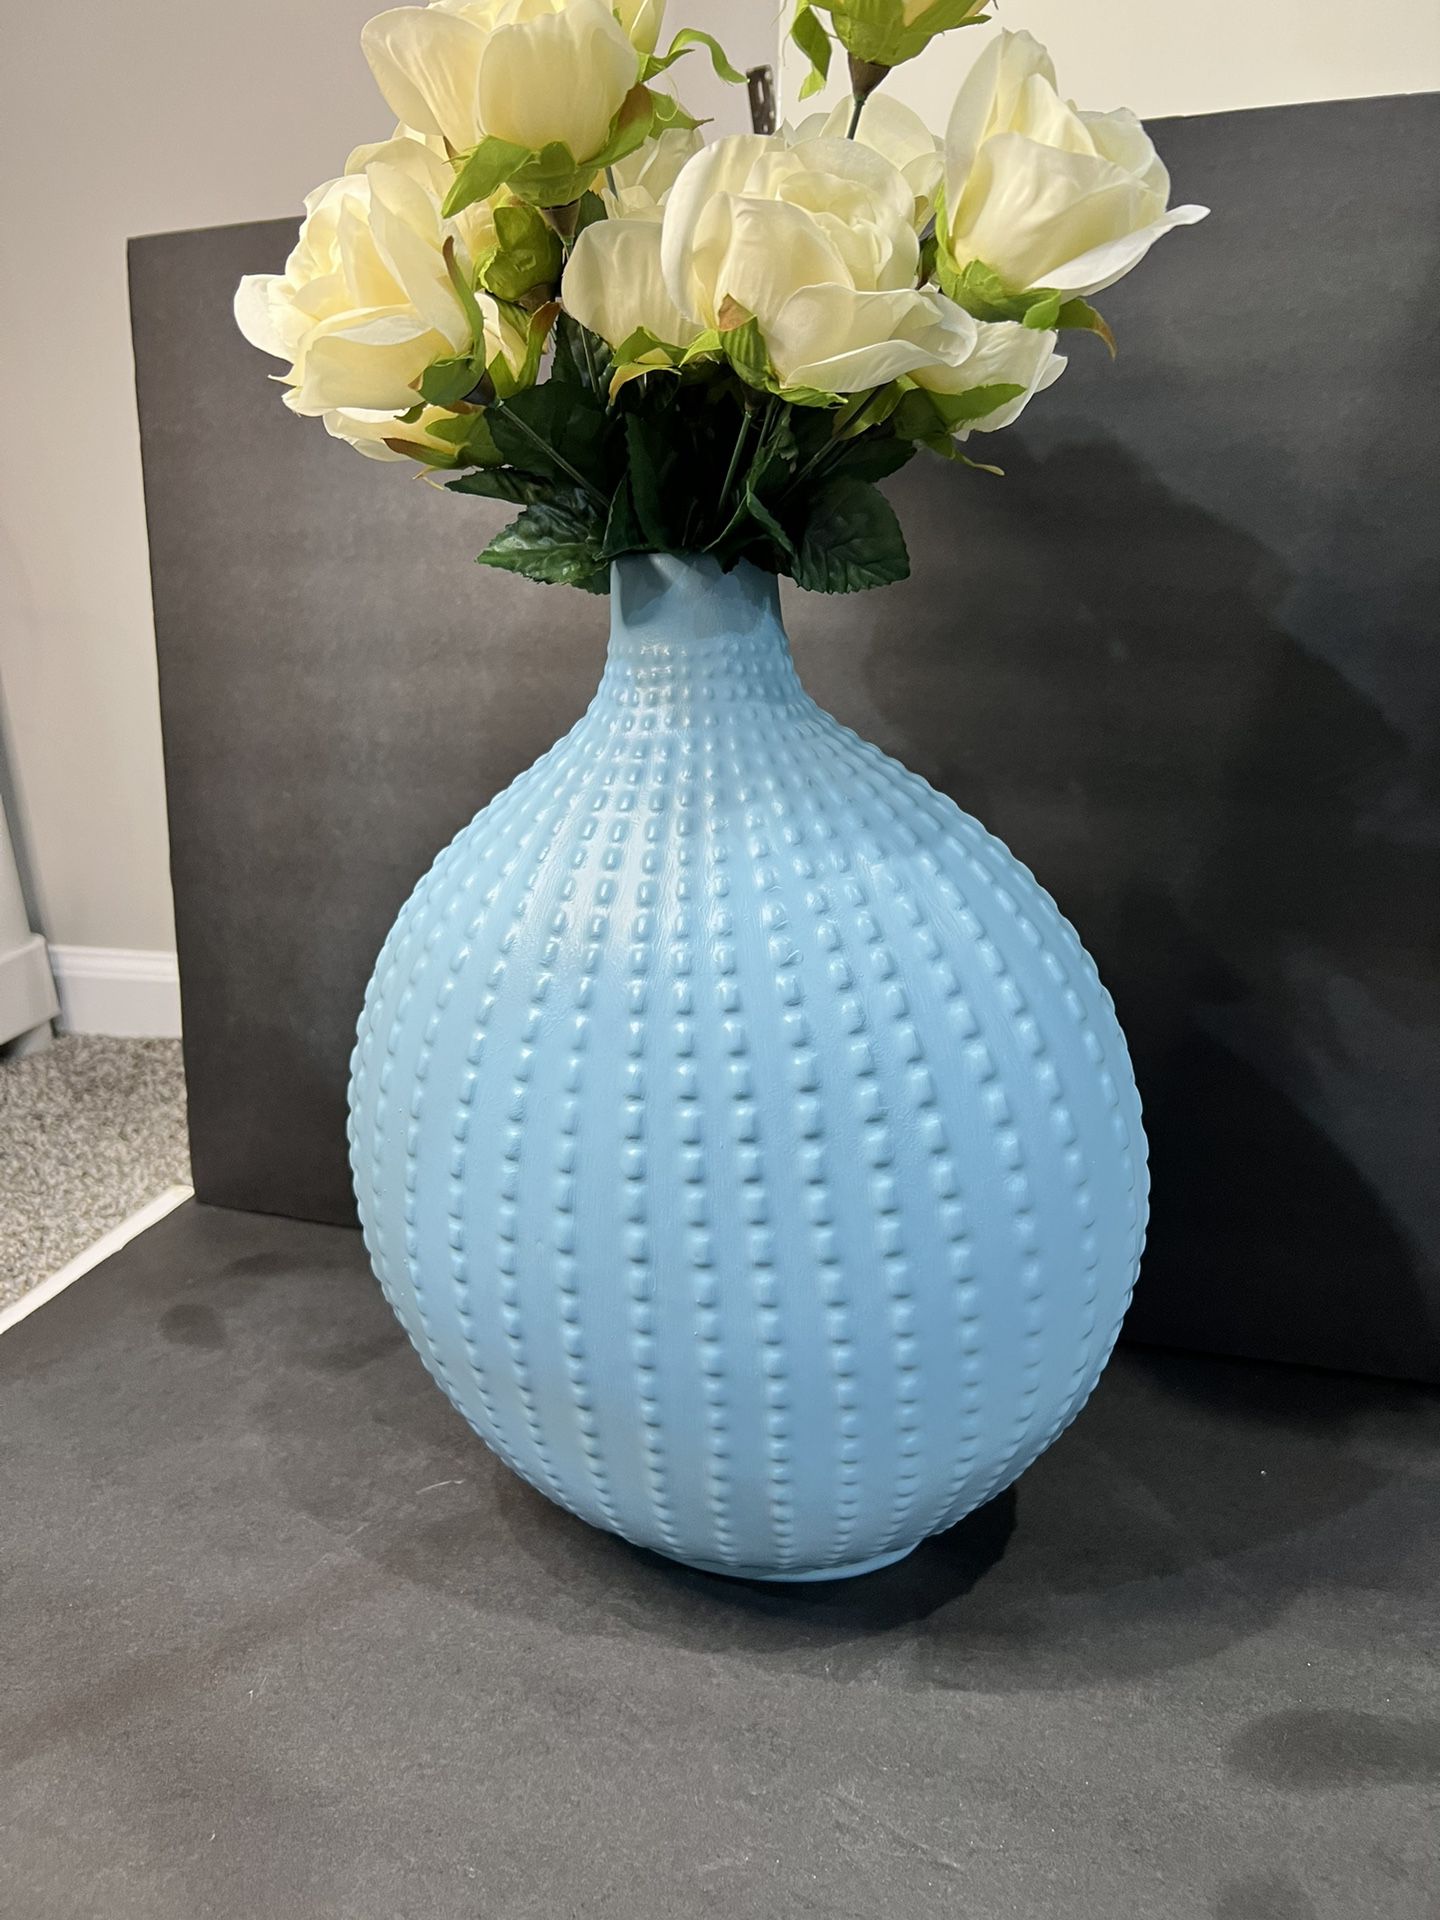 Repainted Large Flower Vase